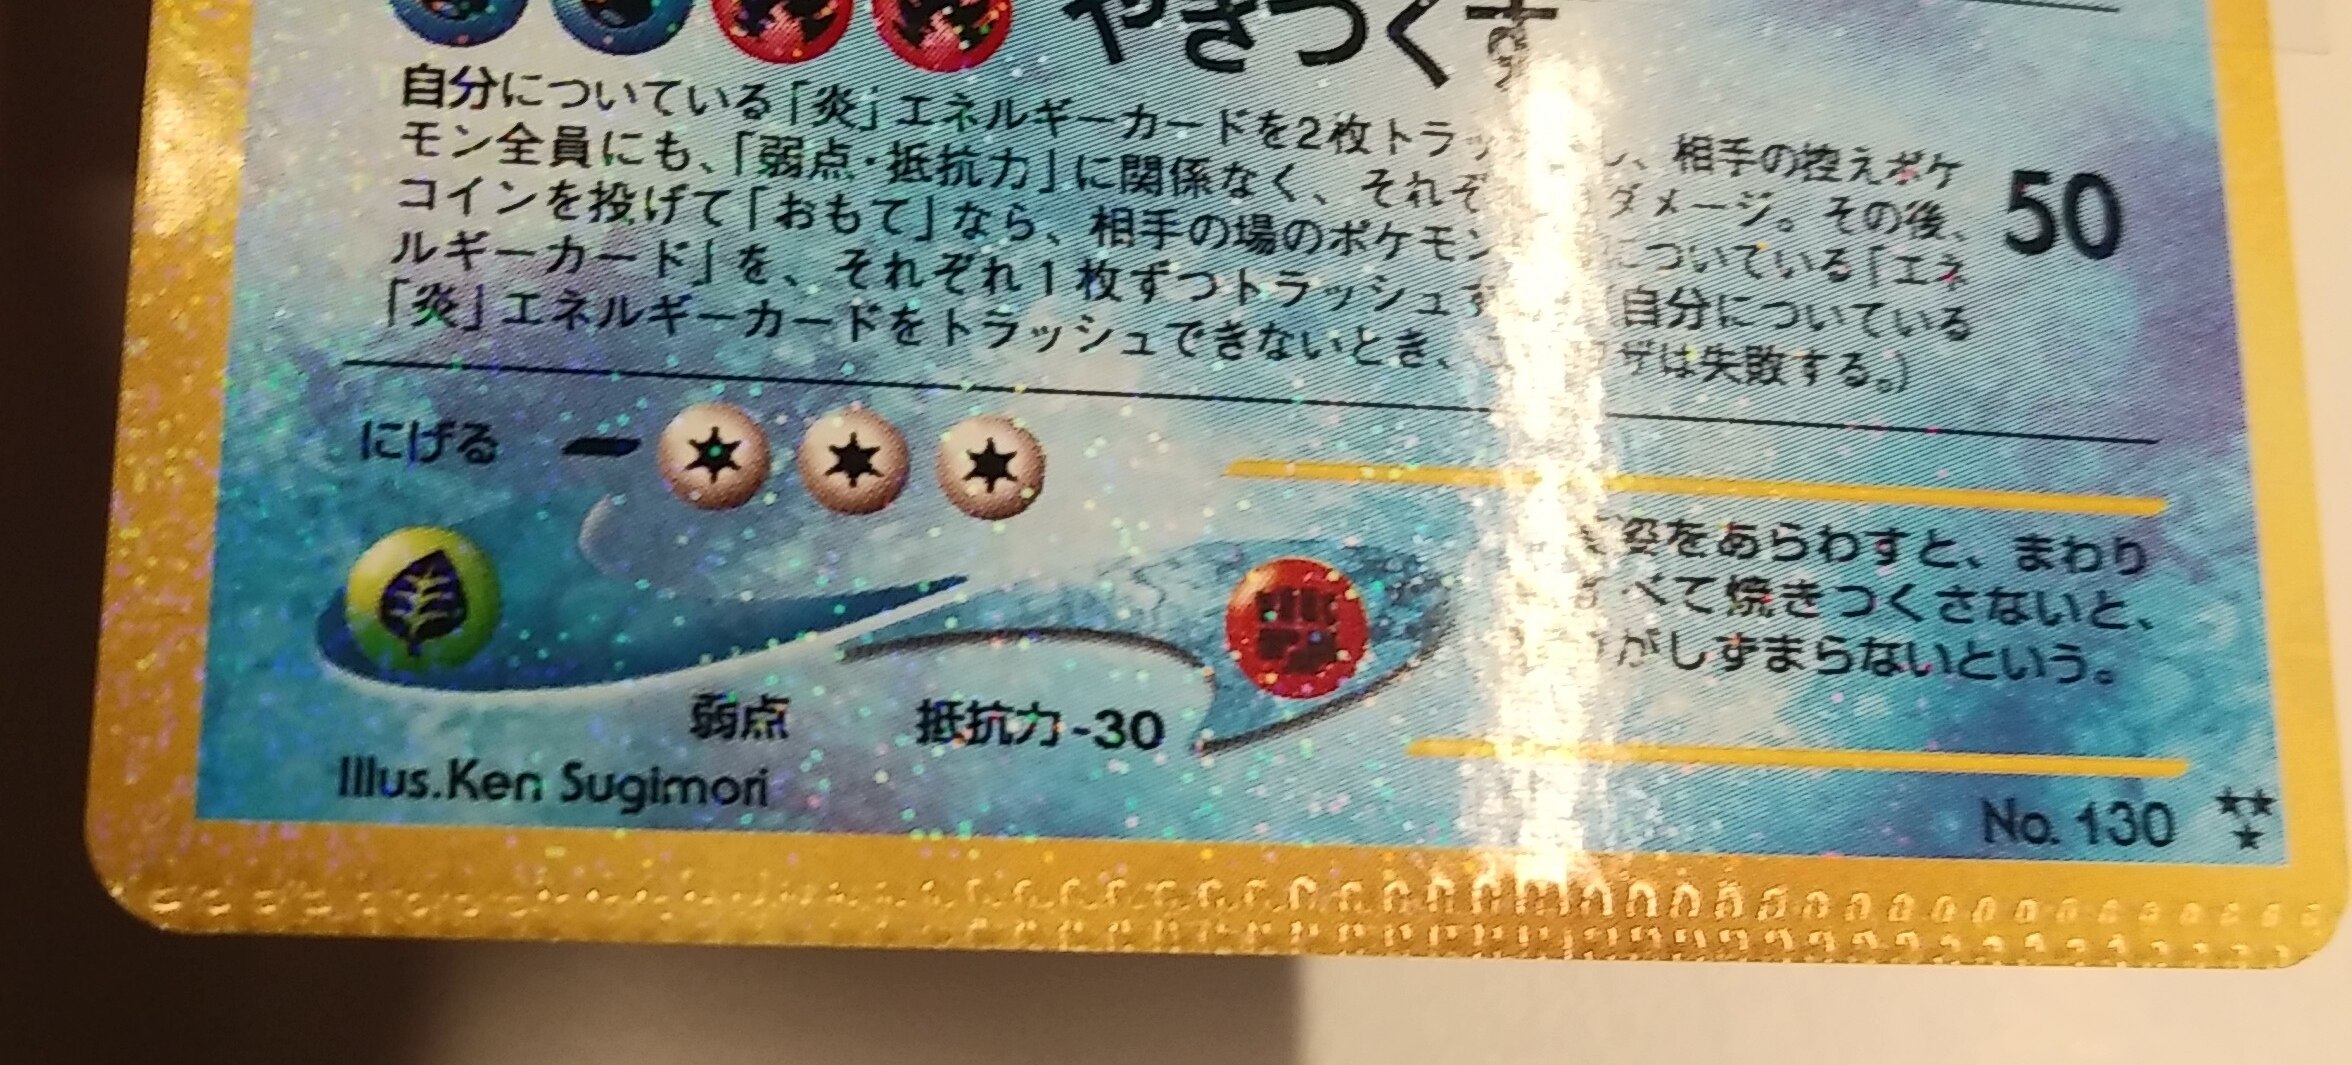 Pokemon 旧裏【neo3弾/めざめる伝説】 ポケモン(水) ひかるギャラドス